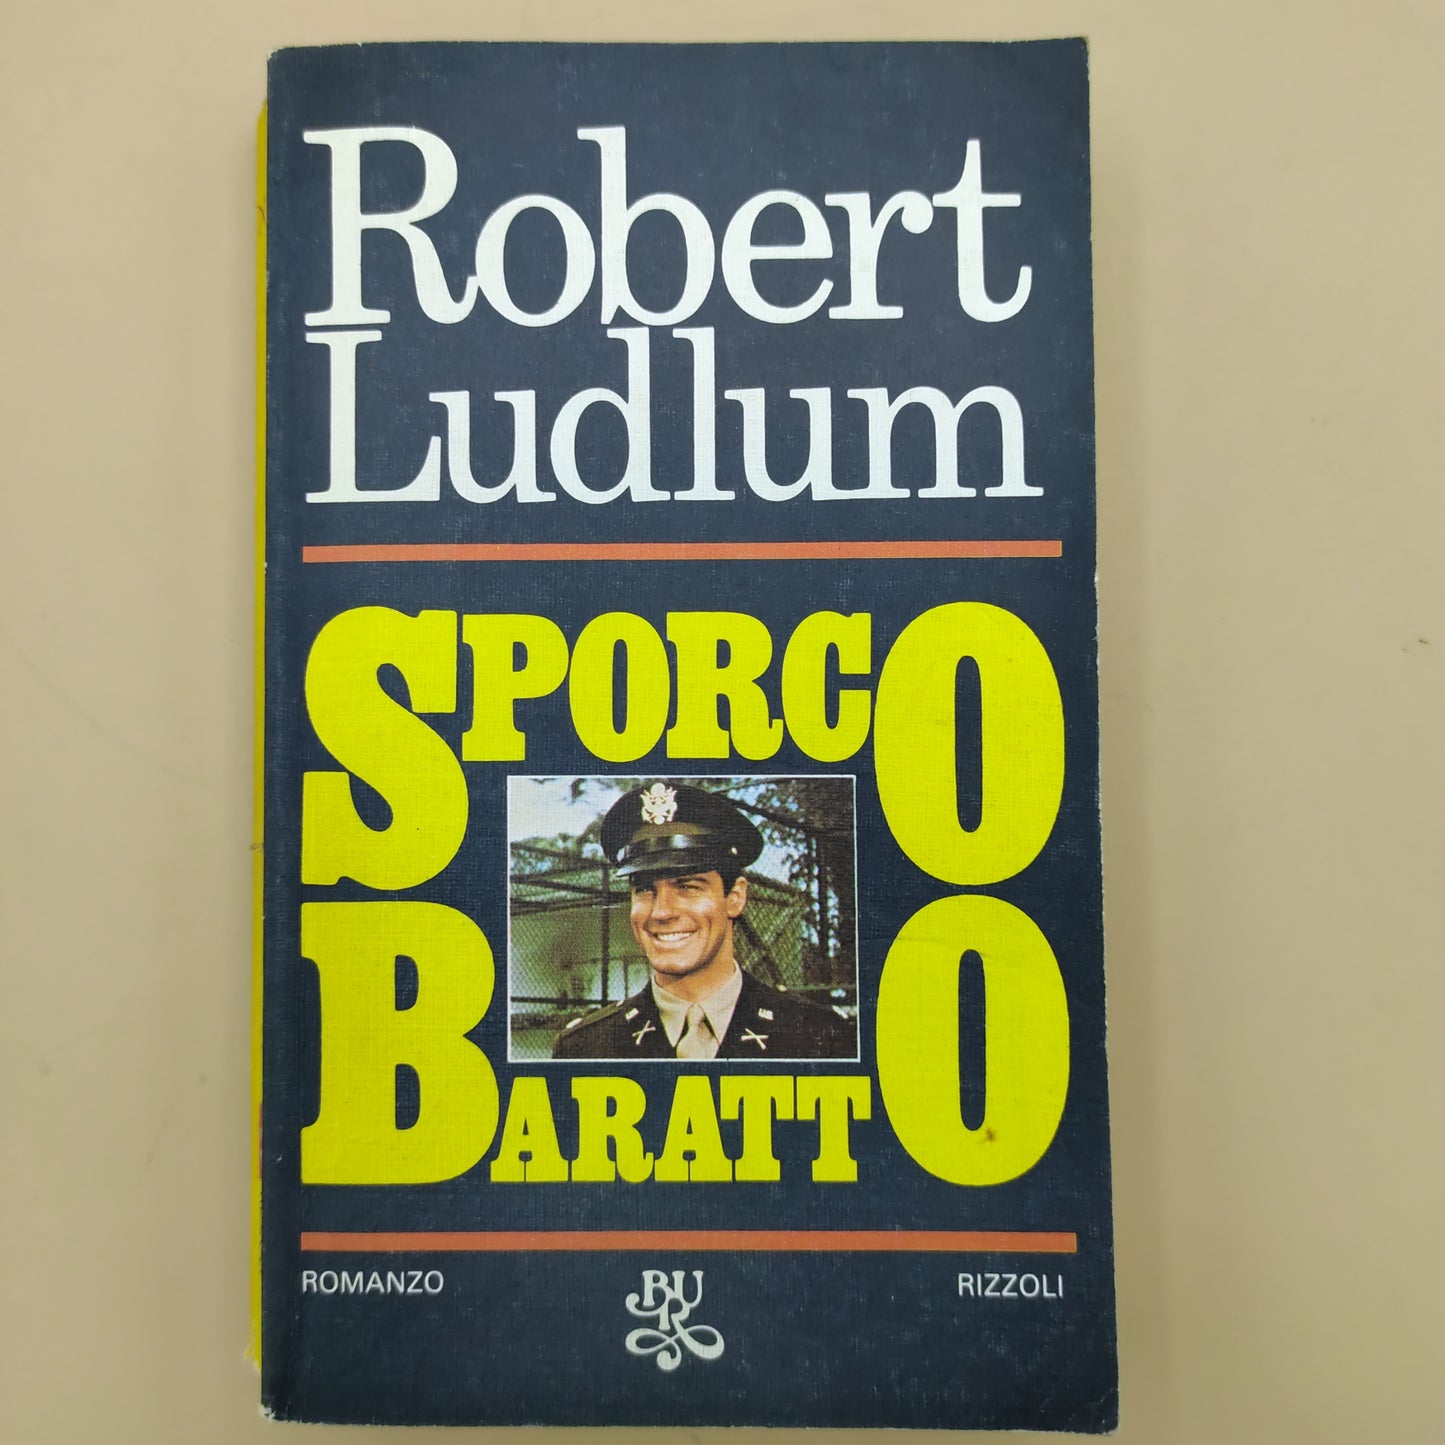 Dirty Barter - Robert Ludlum